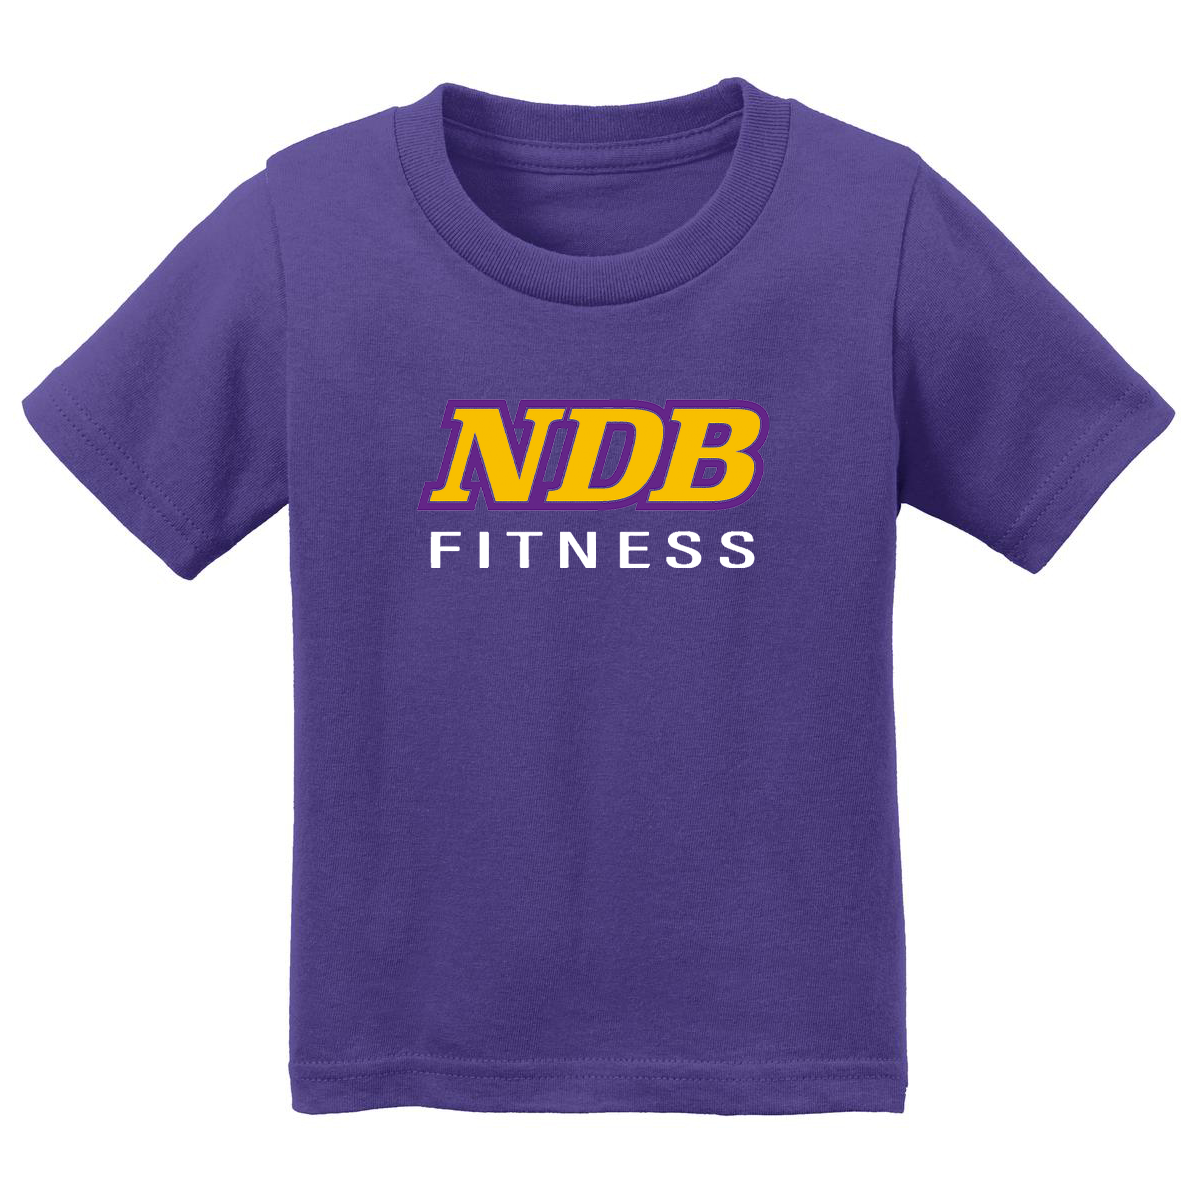 NDB Fitness Infant T-Shirt